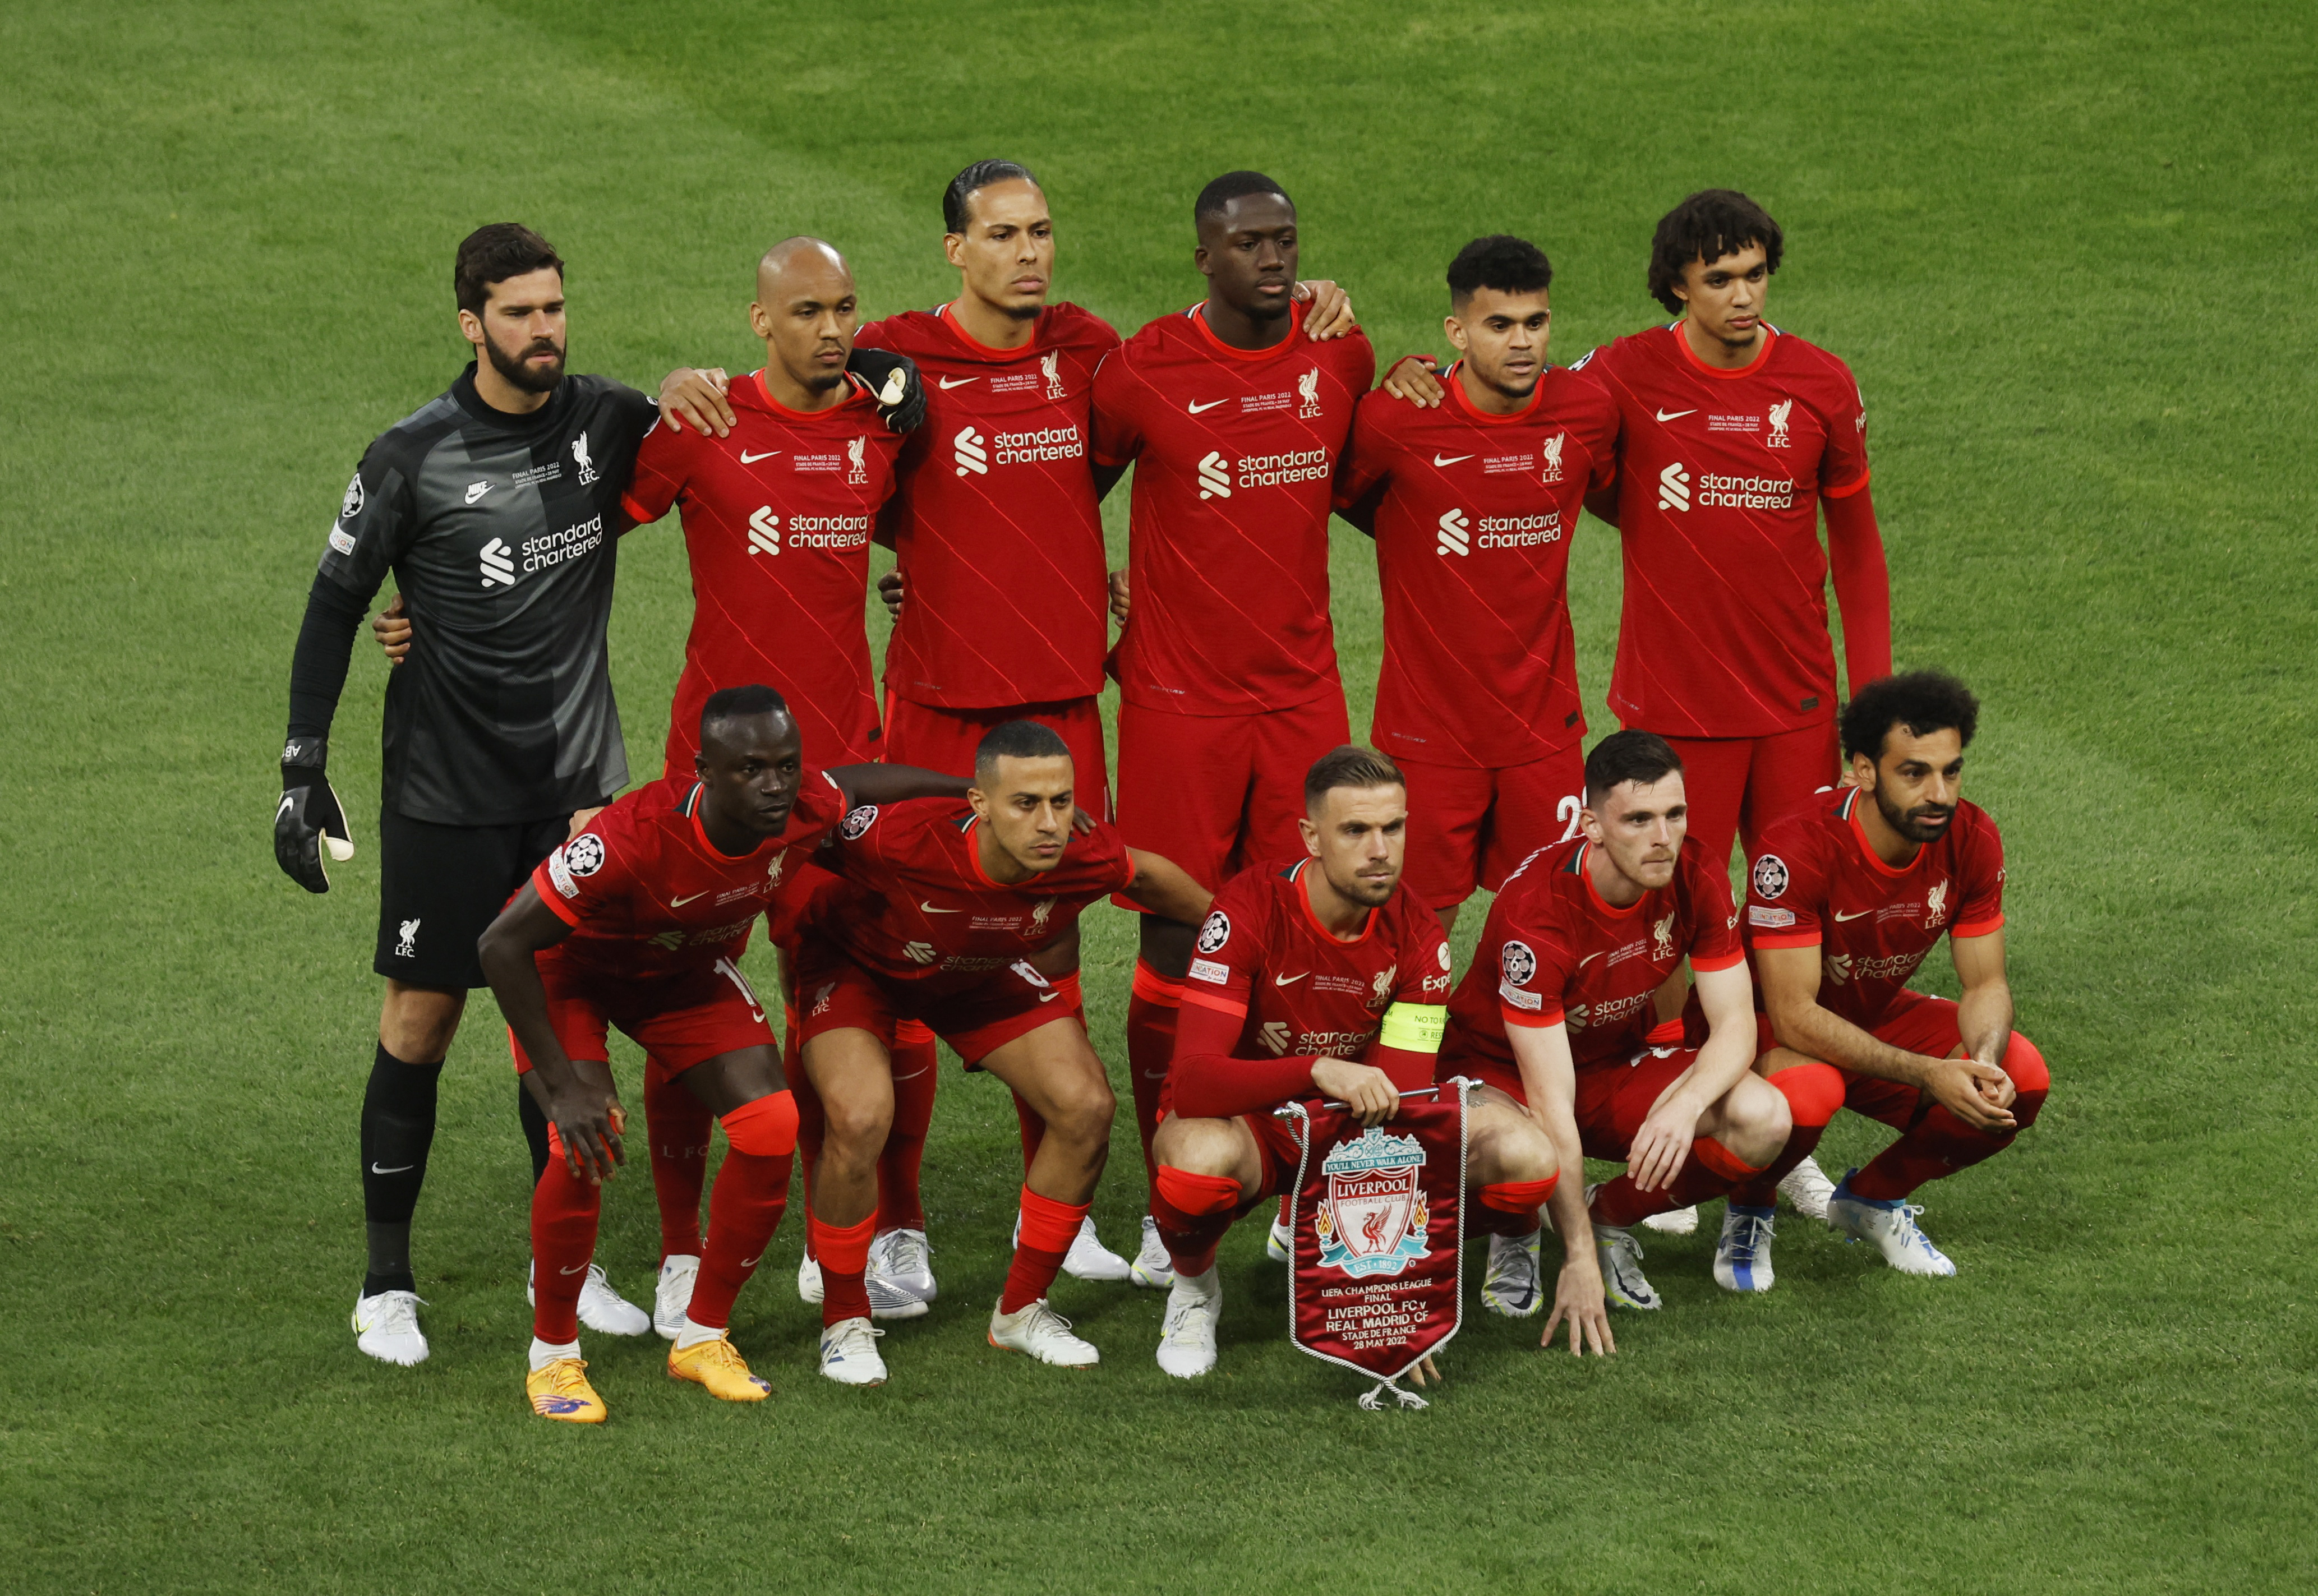 La formación del Liverpool para disputar la final de la UEFA Champions League.